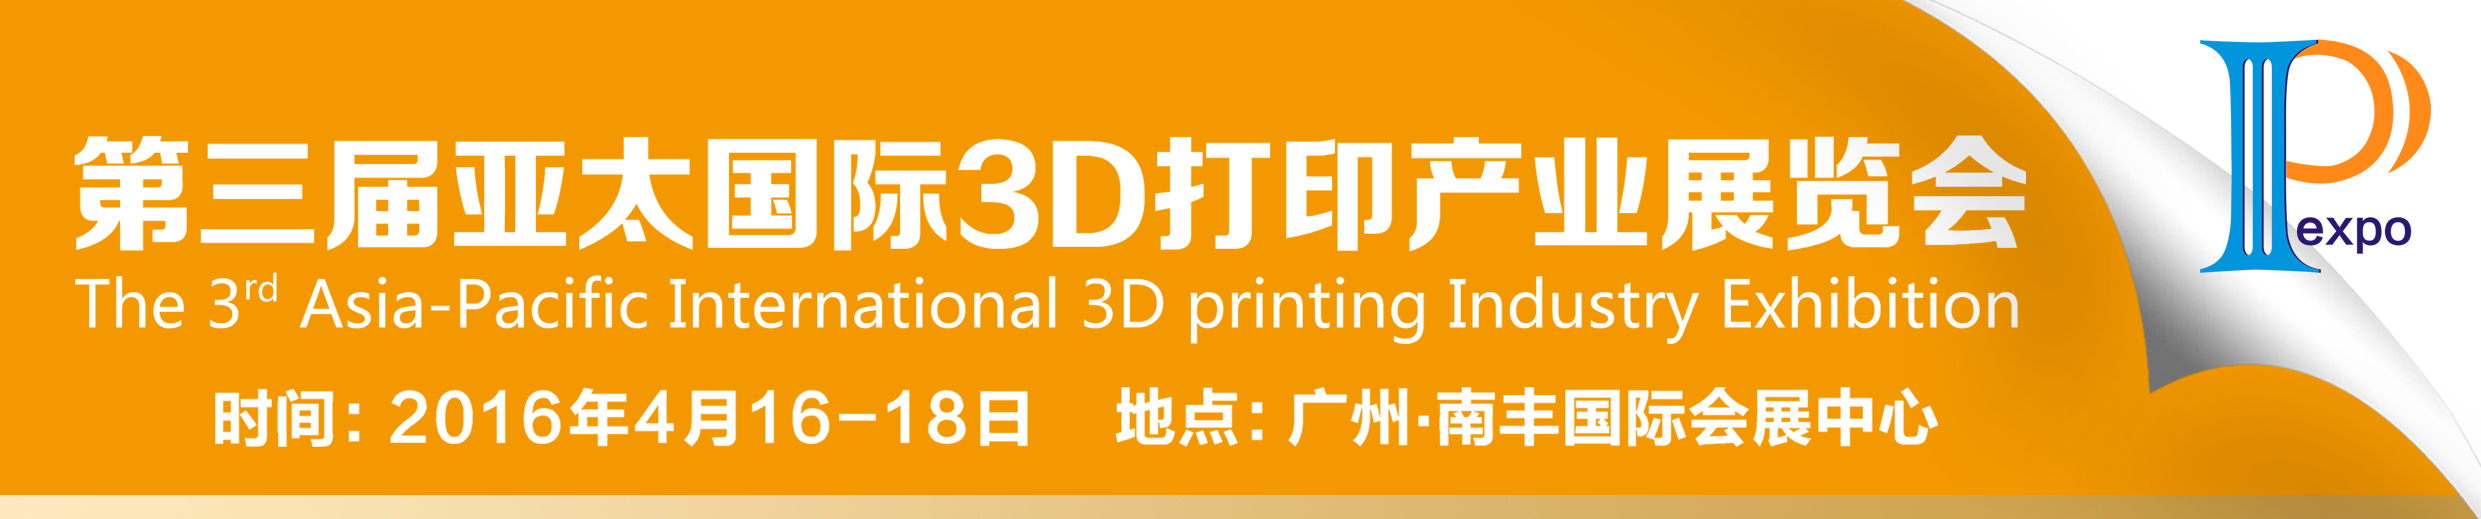 2016 第三届亚太国际 3D 打印产业展览会